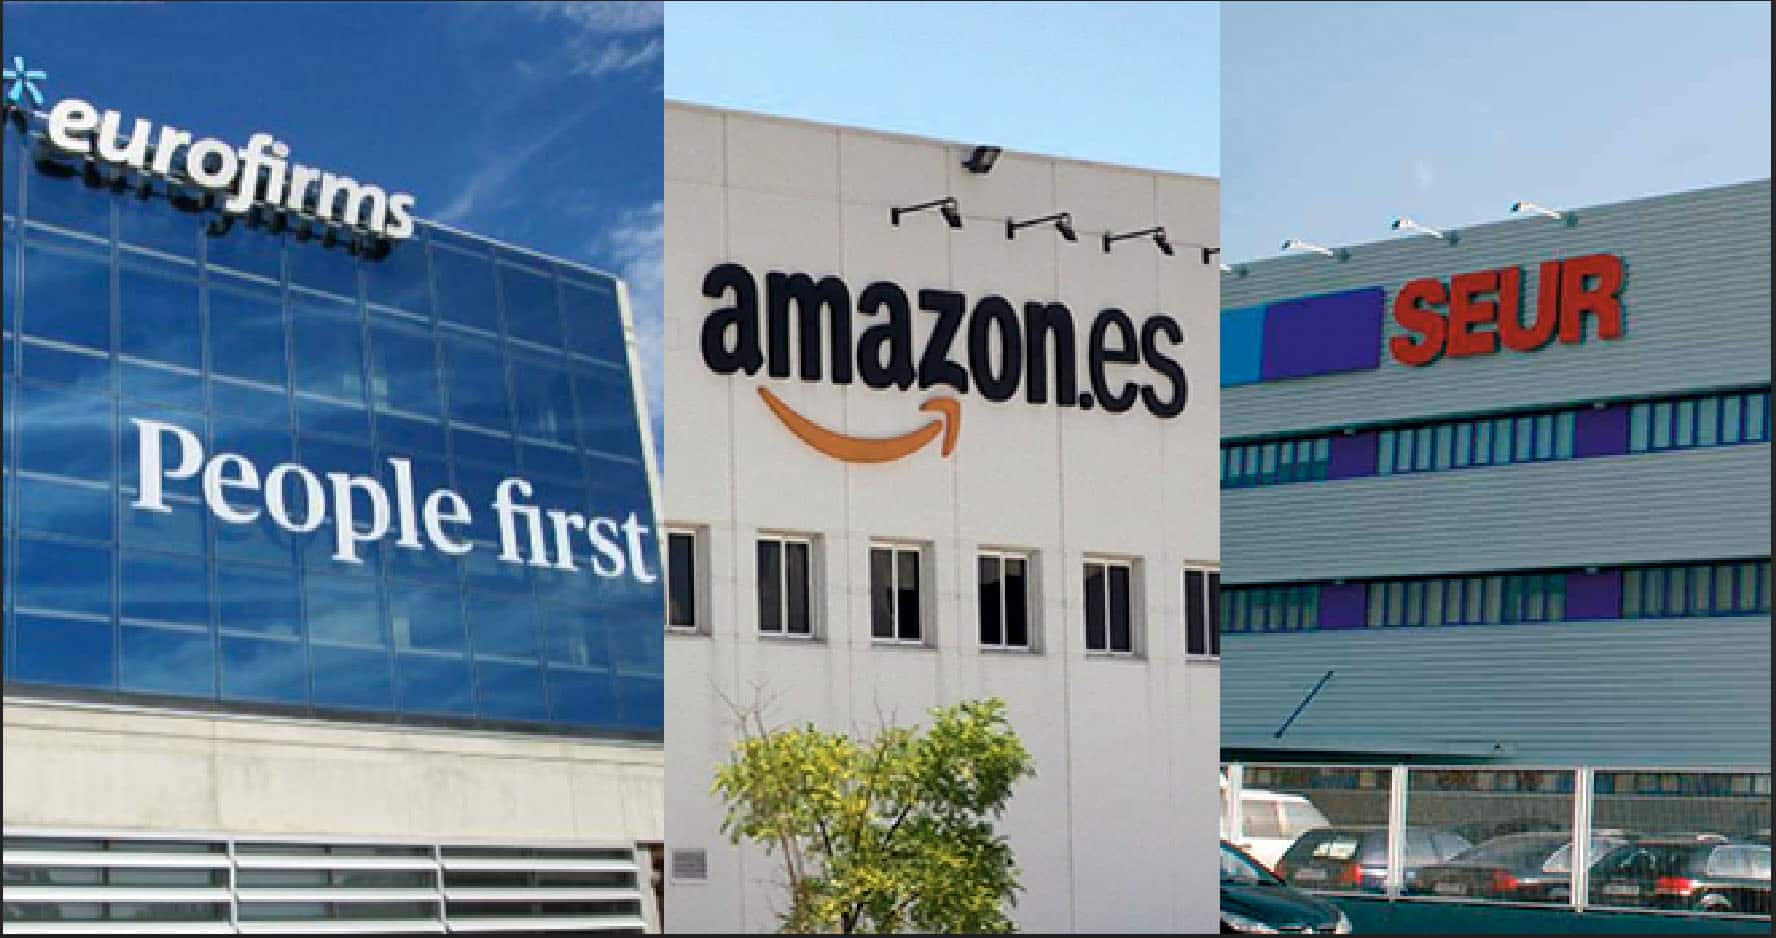 Black Friday en Amazon, Eurofirms y Seur: las compañías que lideran la contratación